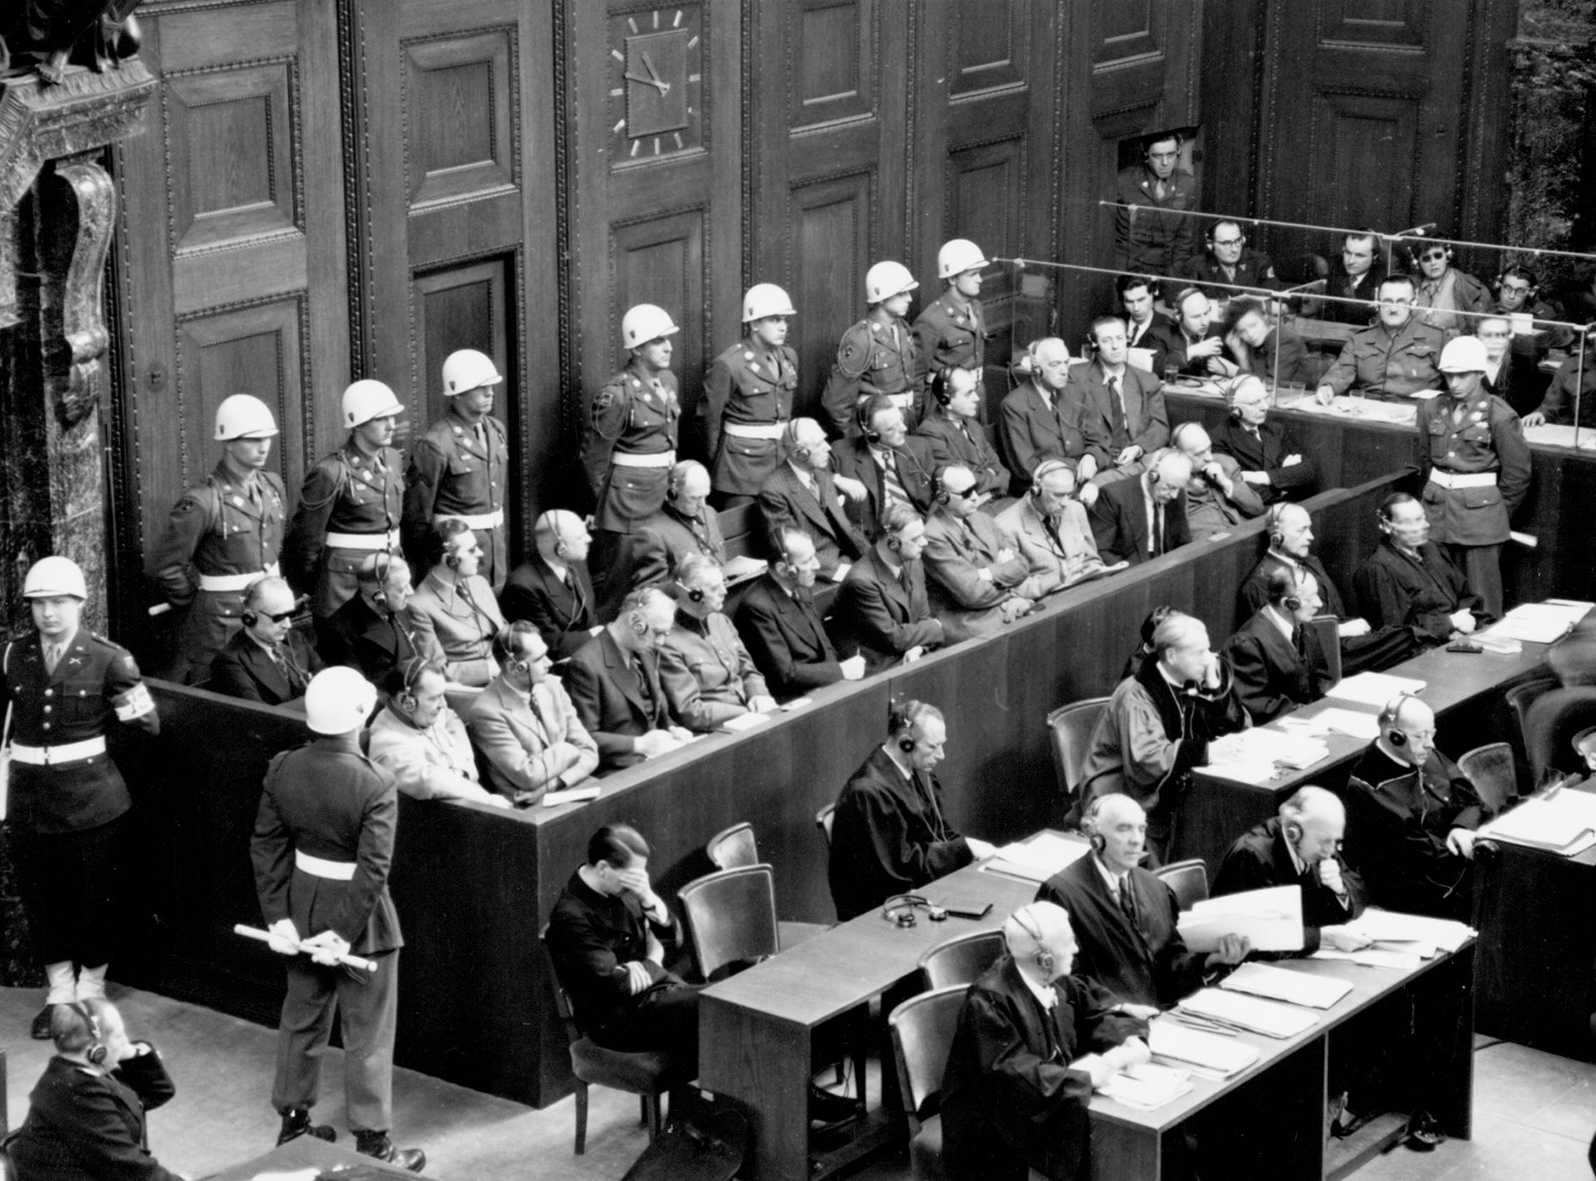 Die Abbildung zeigt die Anklagebank mit den Angeklagten während den Nürnberger Prozessen. Die Fotoaufnahme stammt aus den National Archives in den USA.